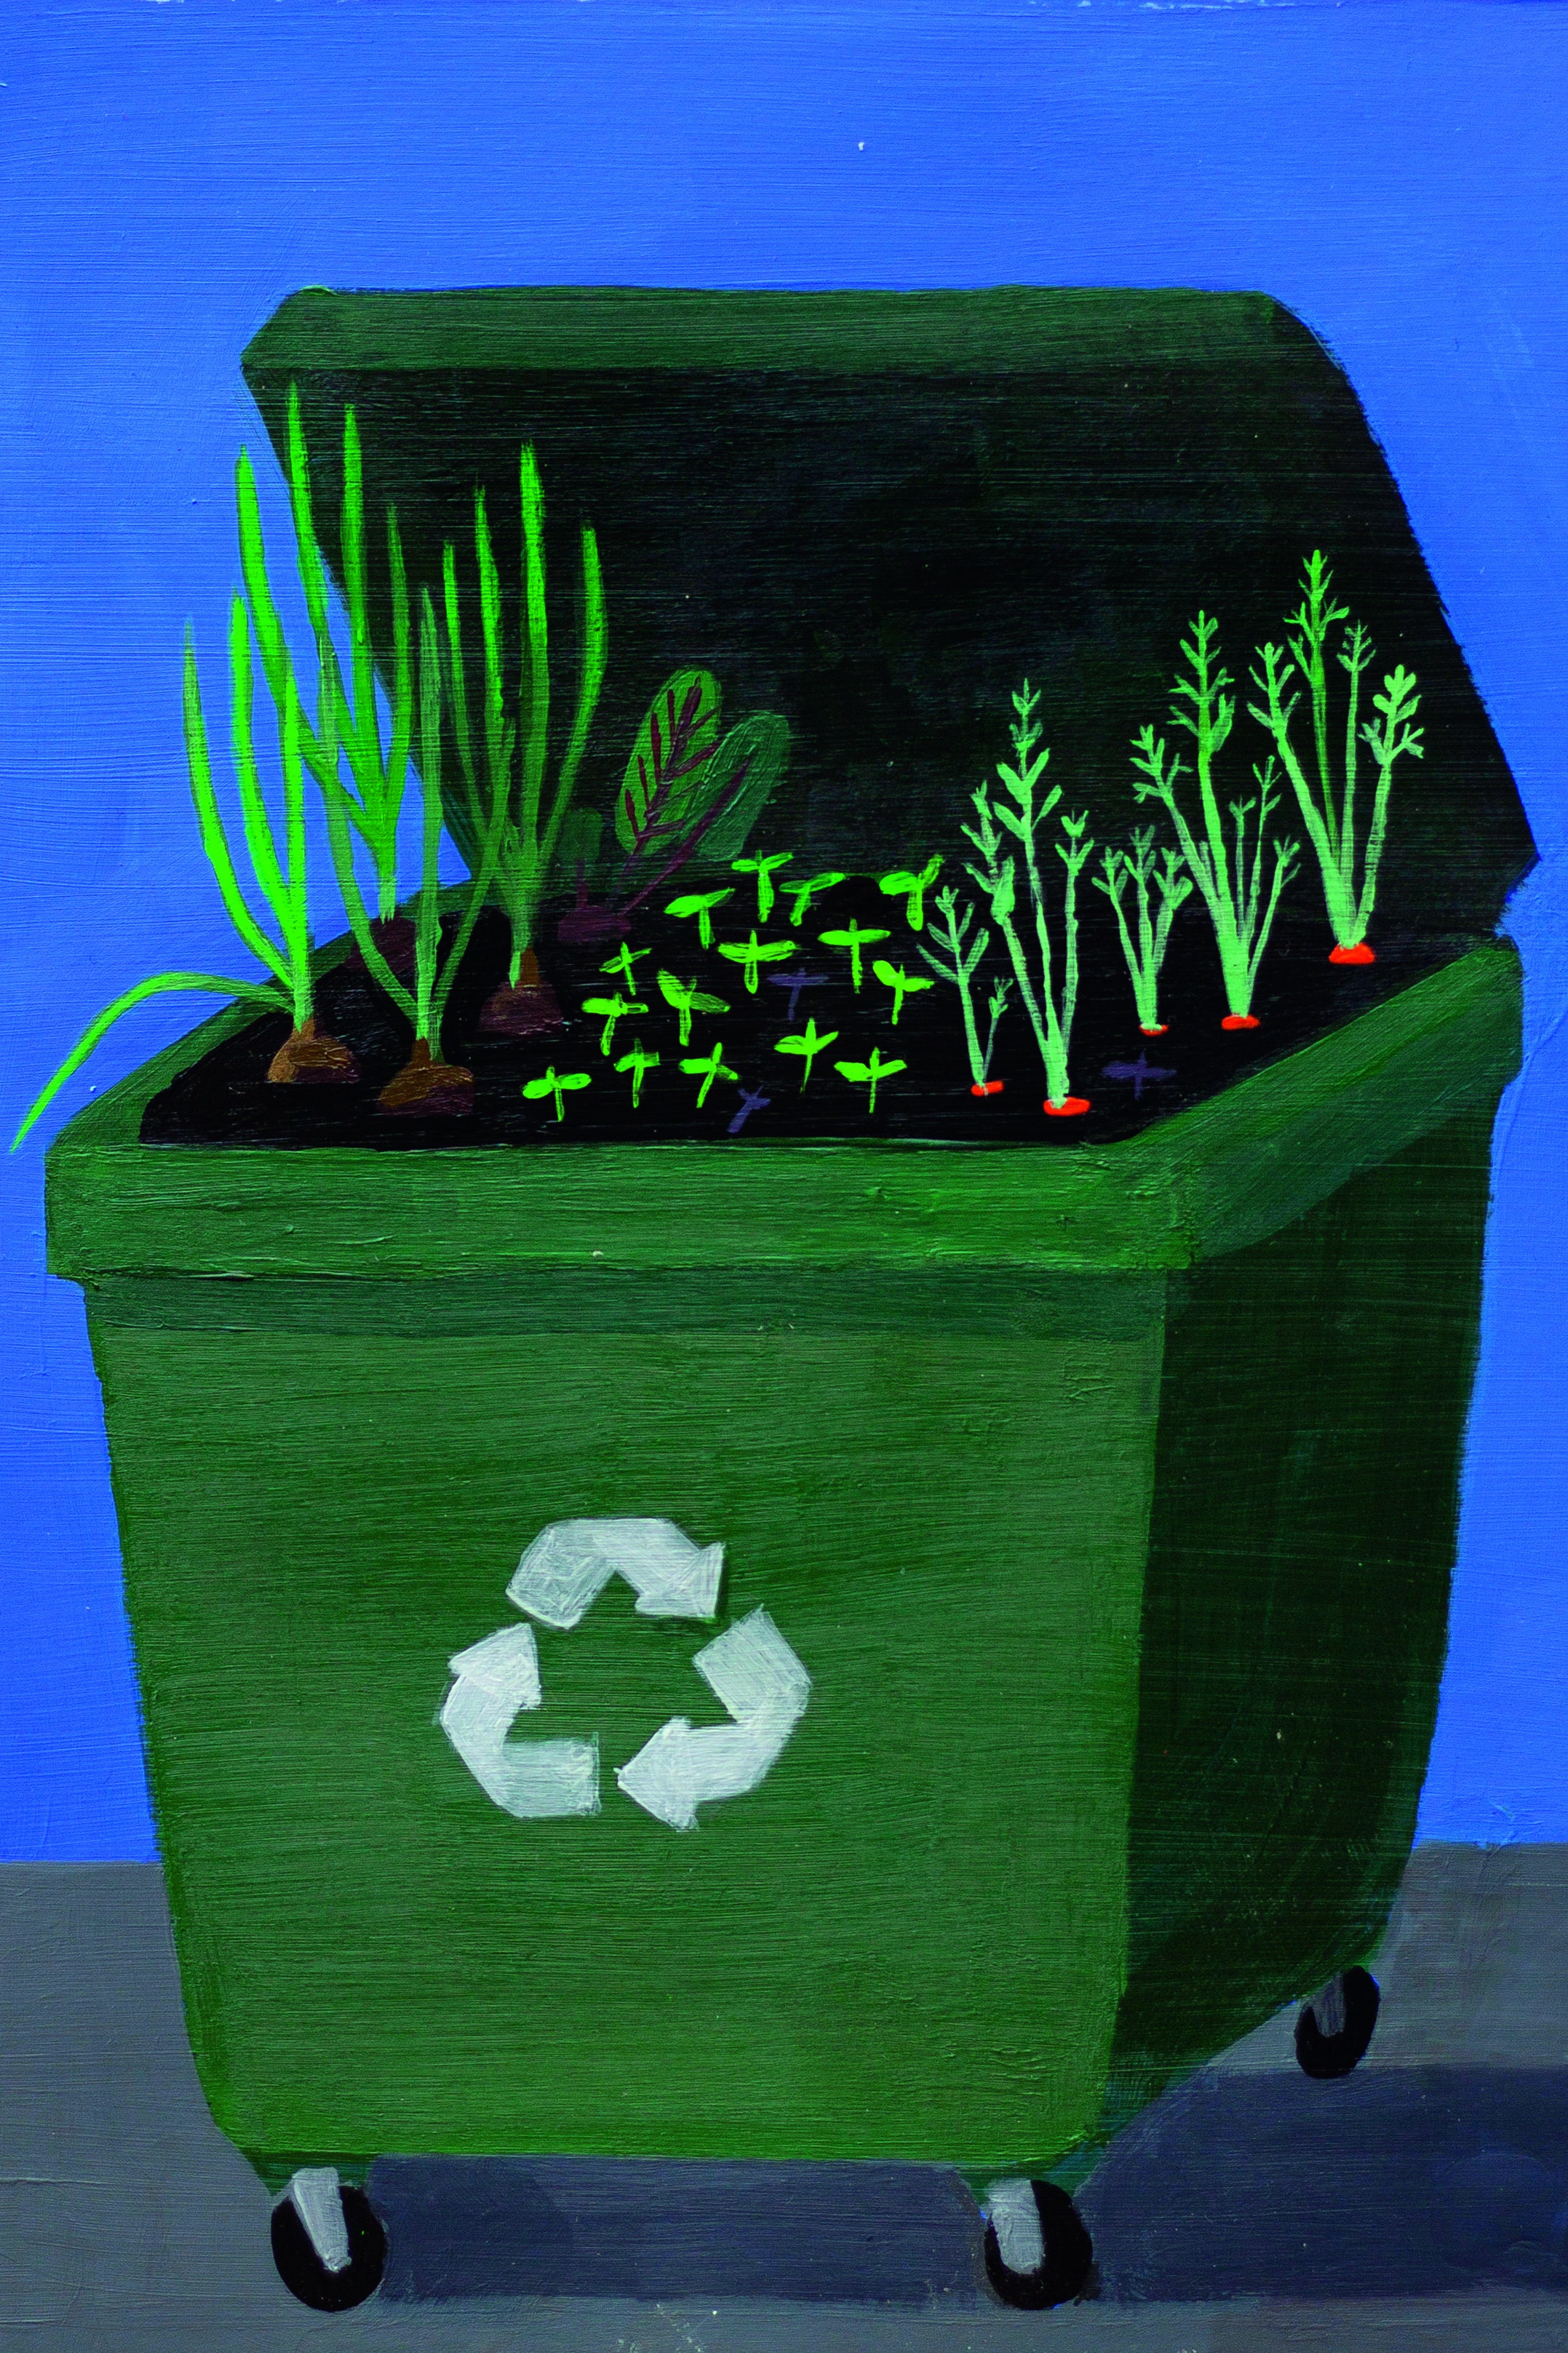 Illustration of plants growing in dustbin